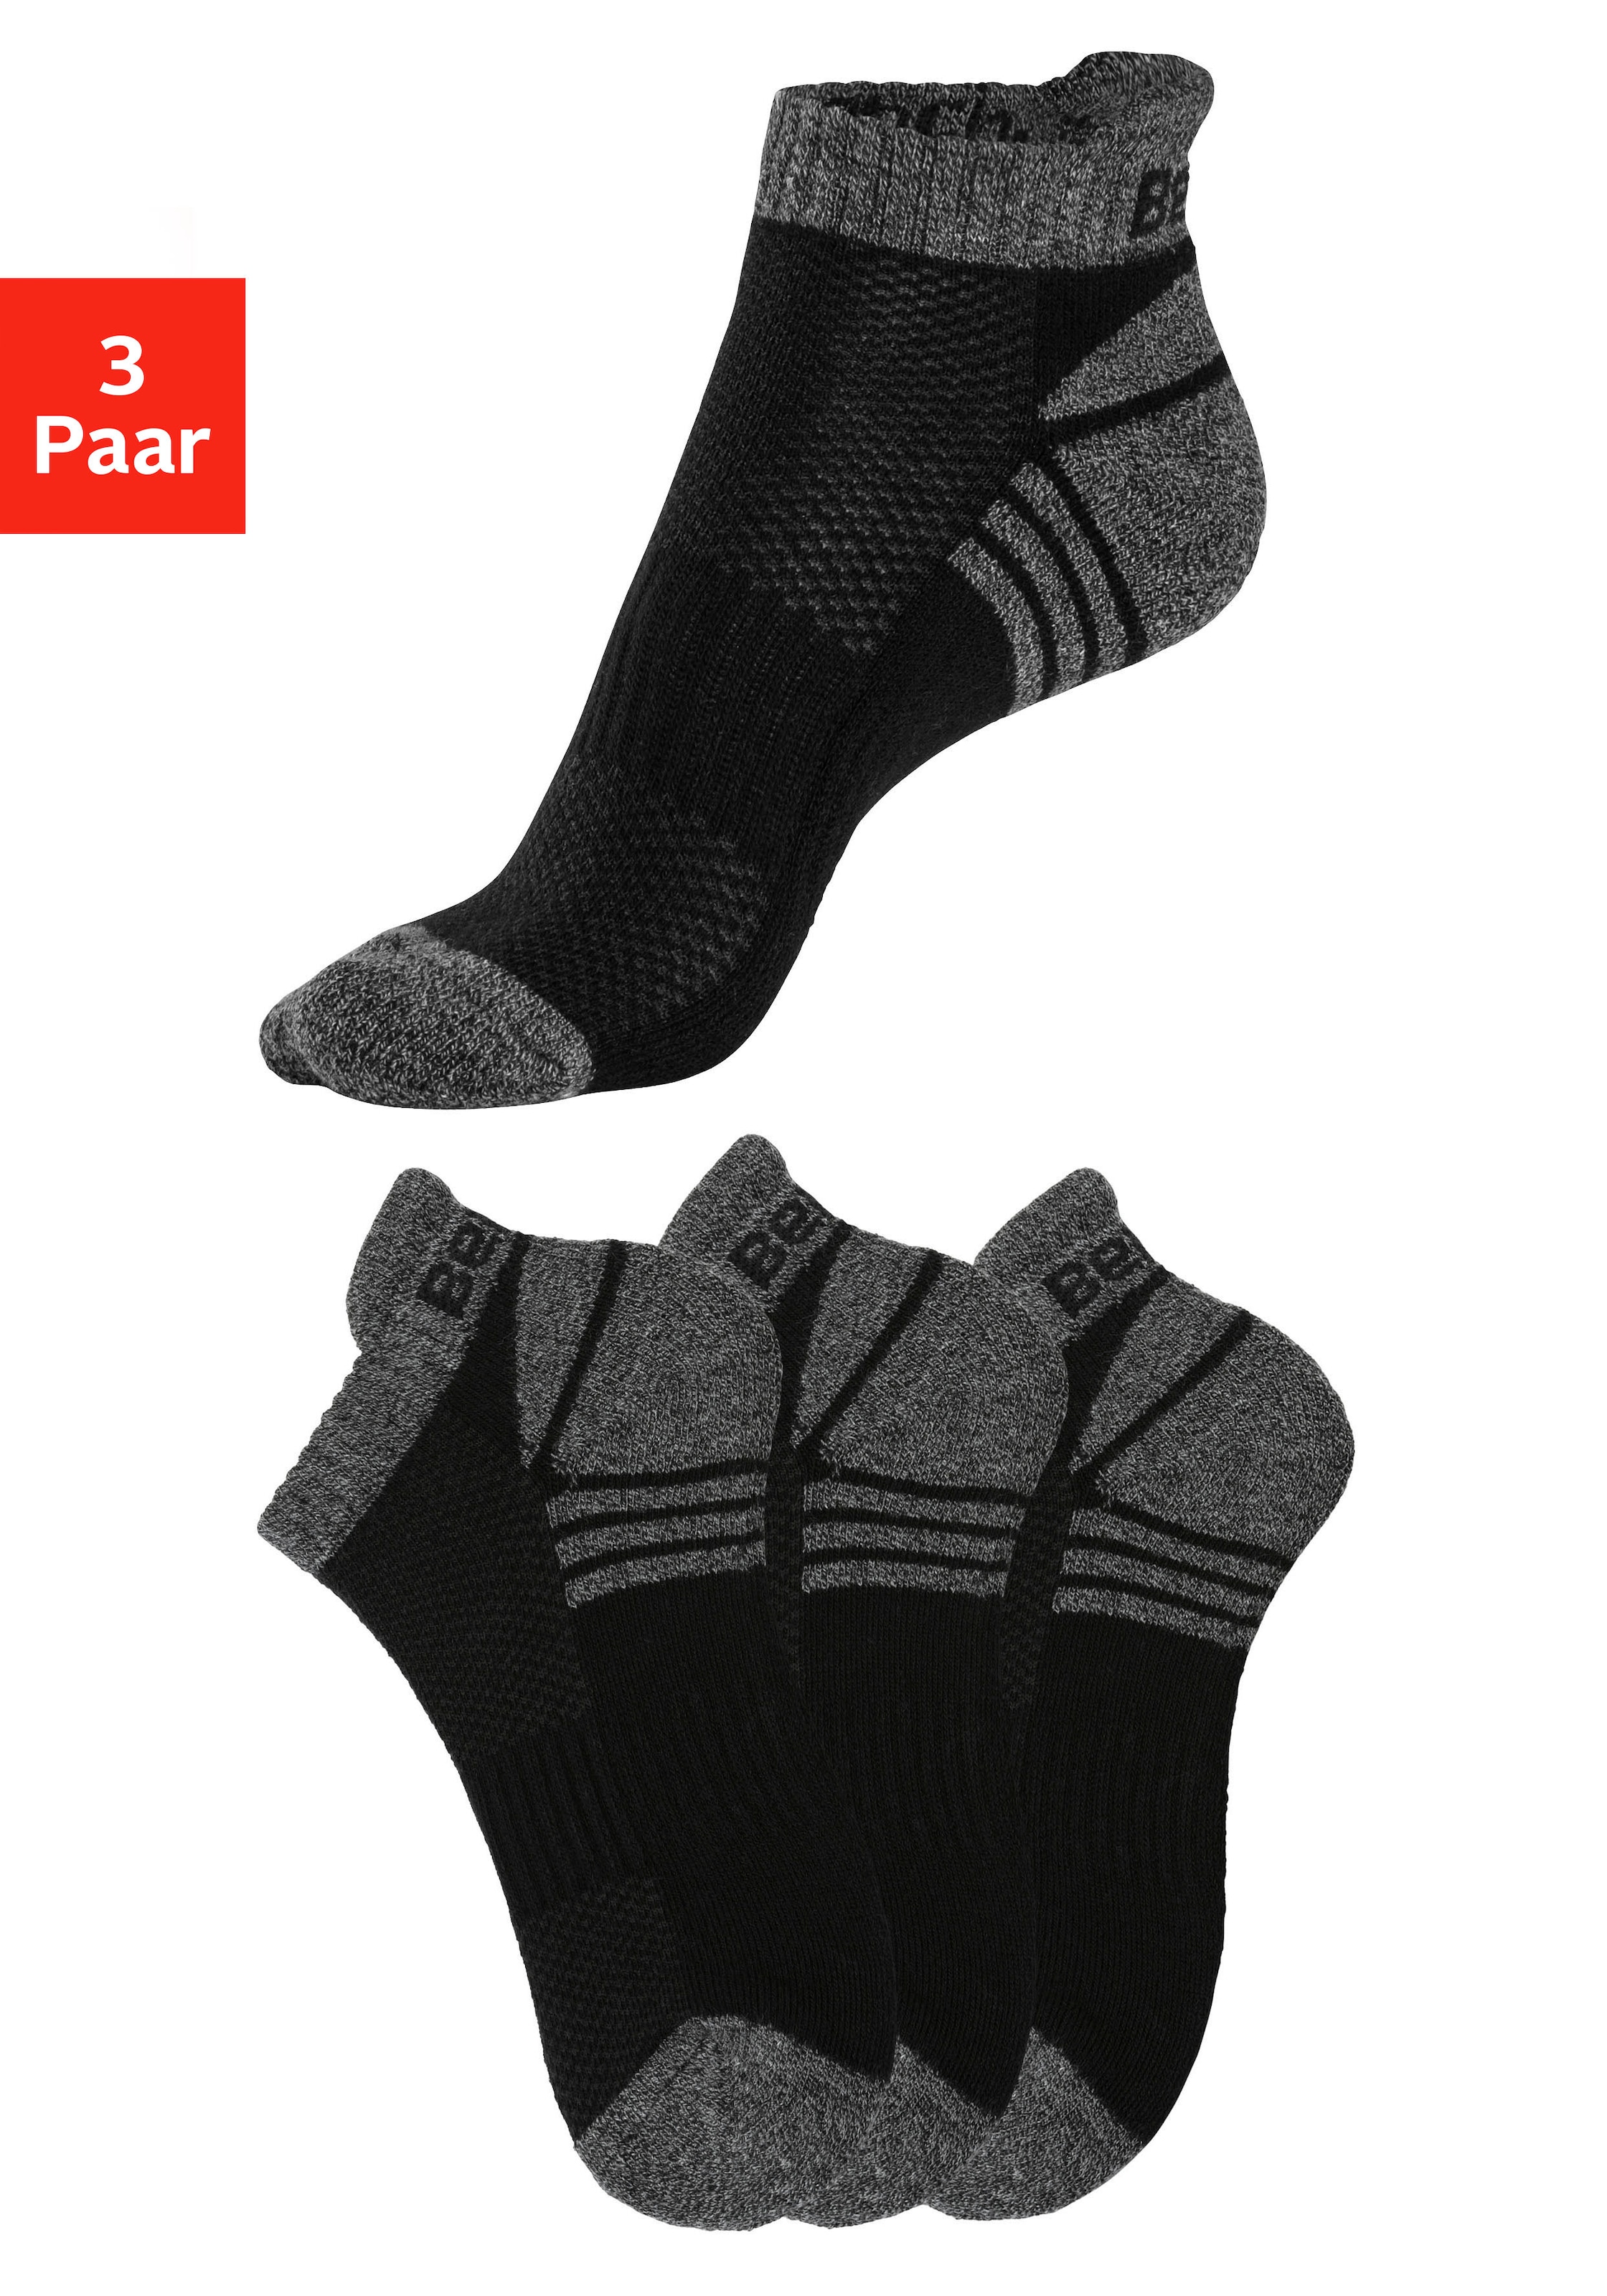 Strümpfe & Socken für Herren im Ackermann Online Shop